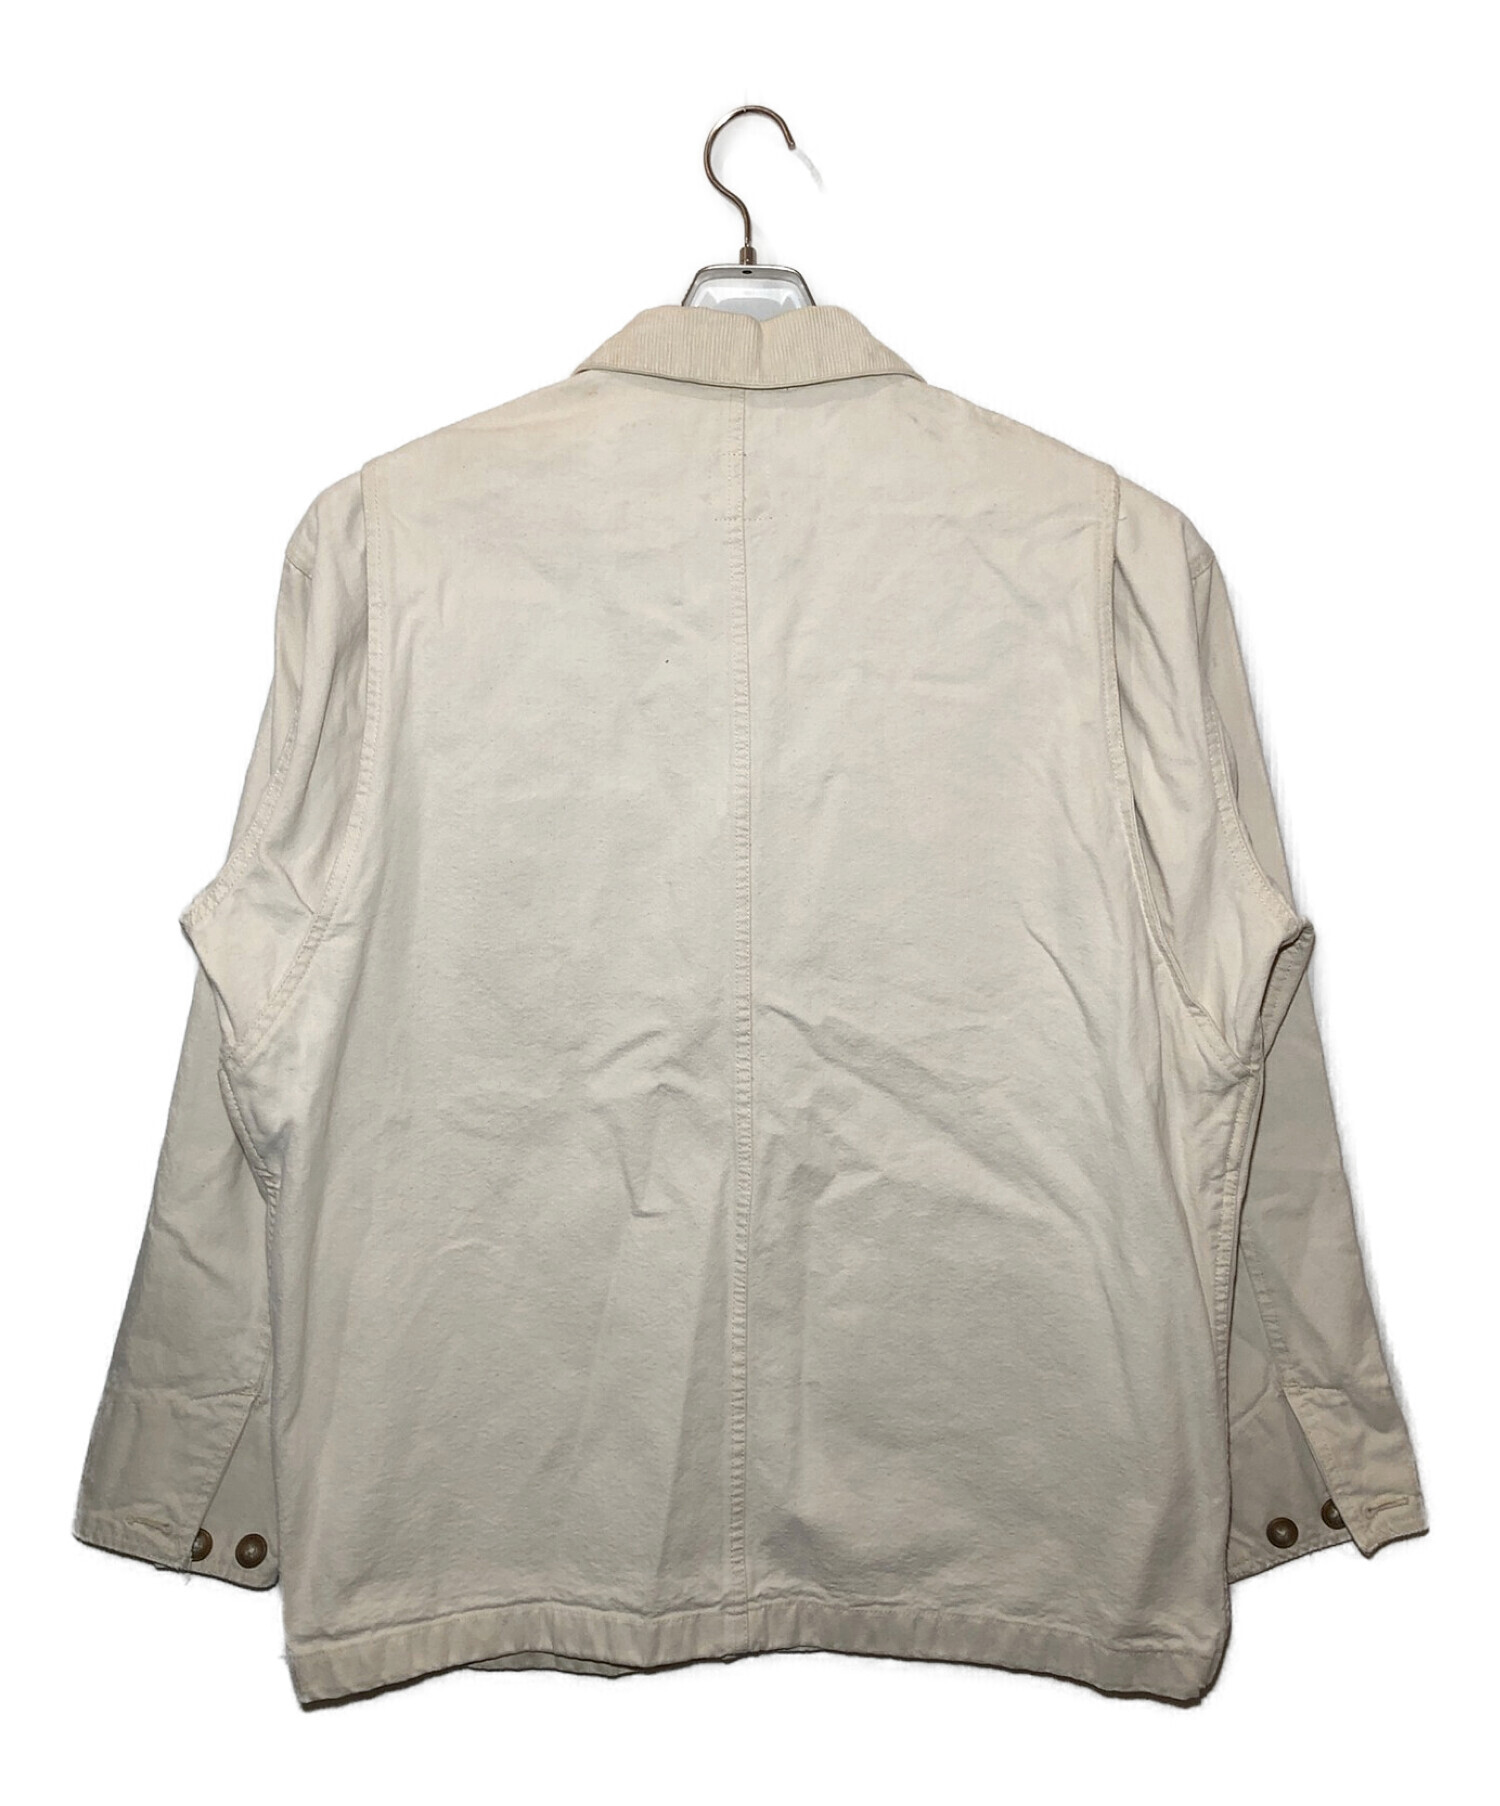 OLD GAP (オールドギャップ) ハンティングジャケット ホワイト サイズ:M